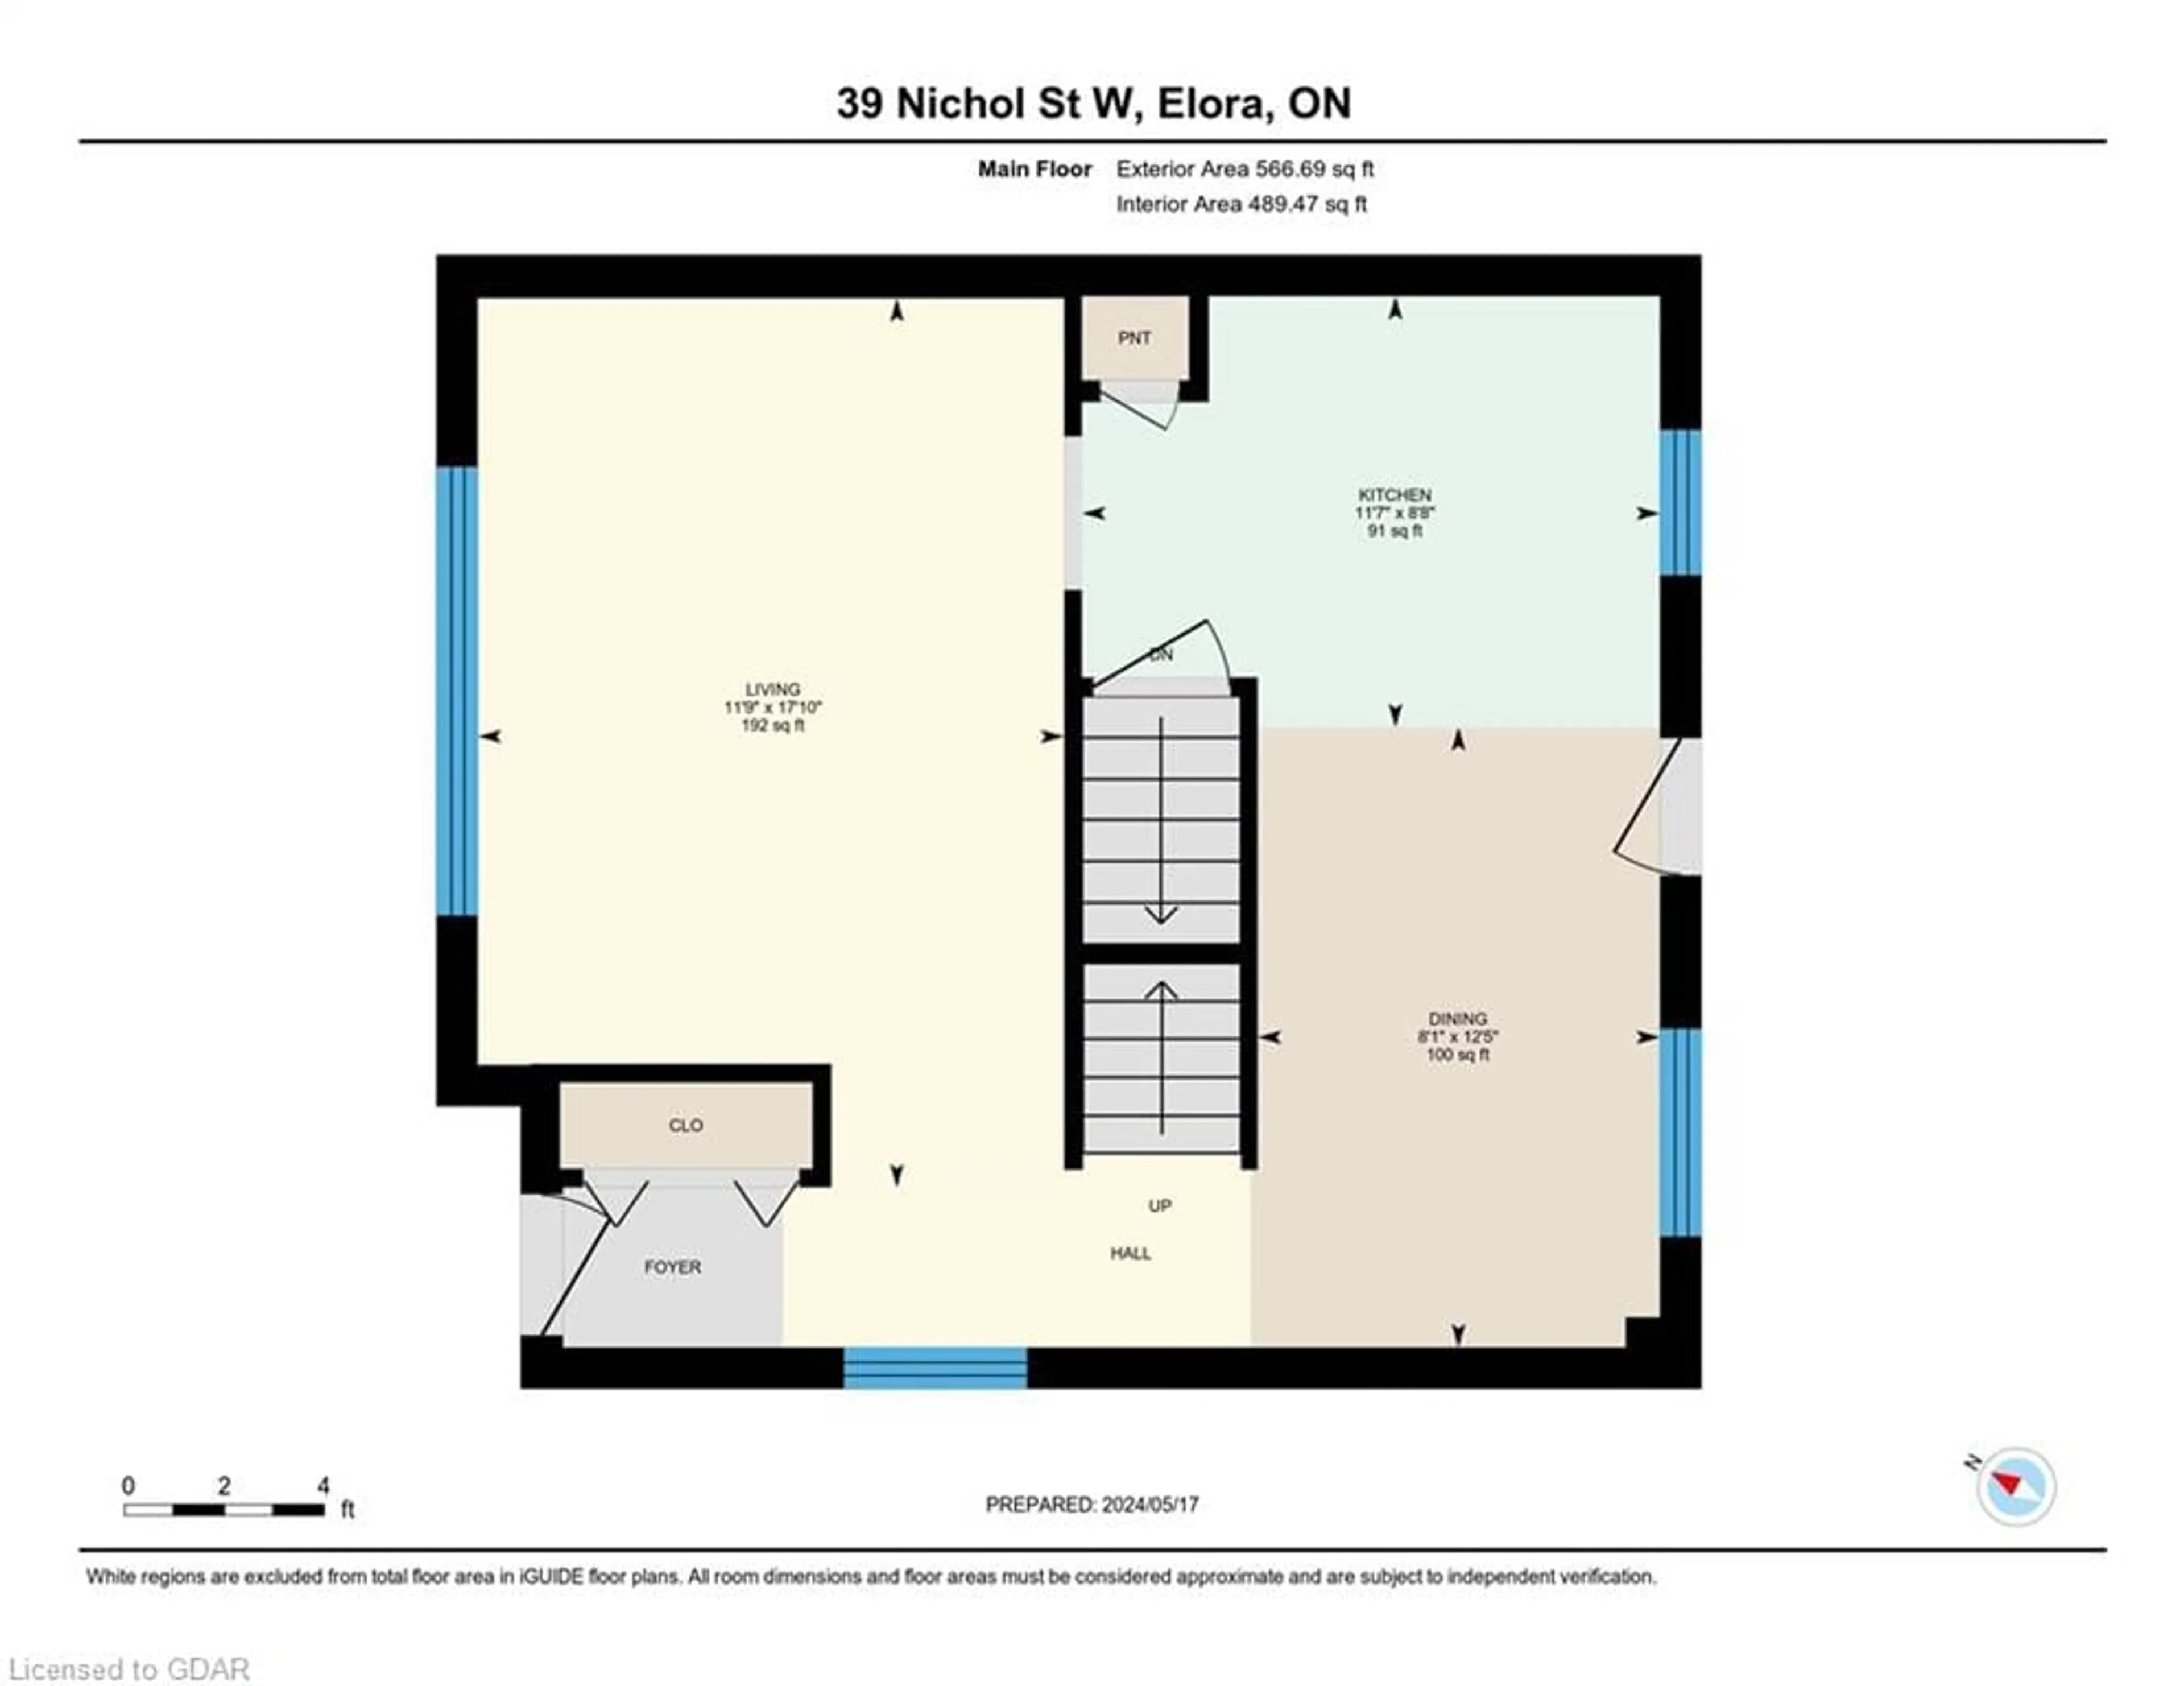 Floor plan for 39 Nichol St W, Elora Ontario N0B 1S0